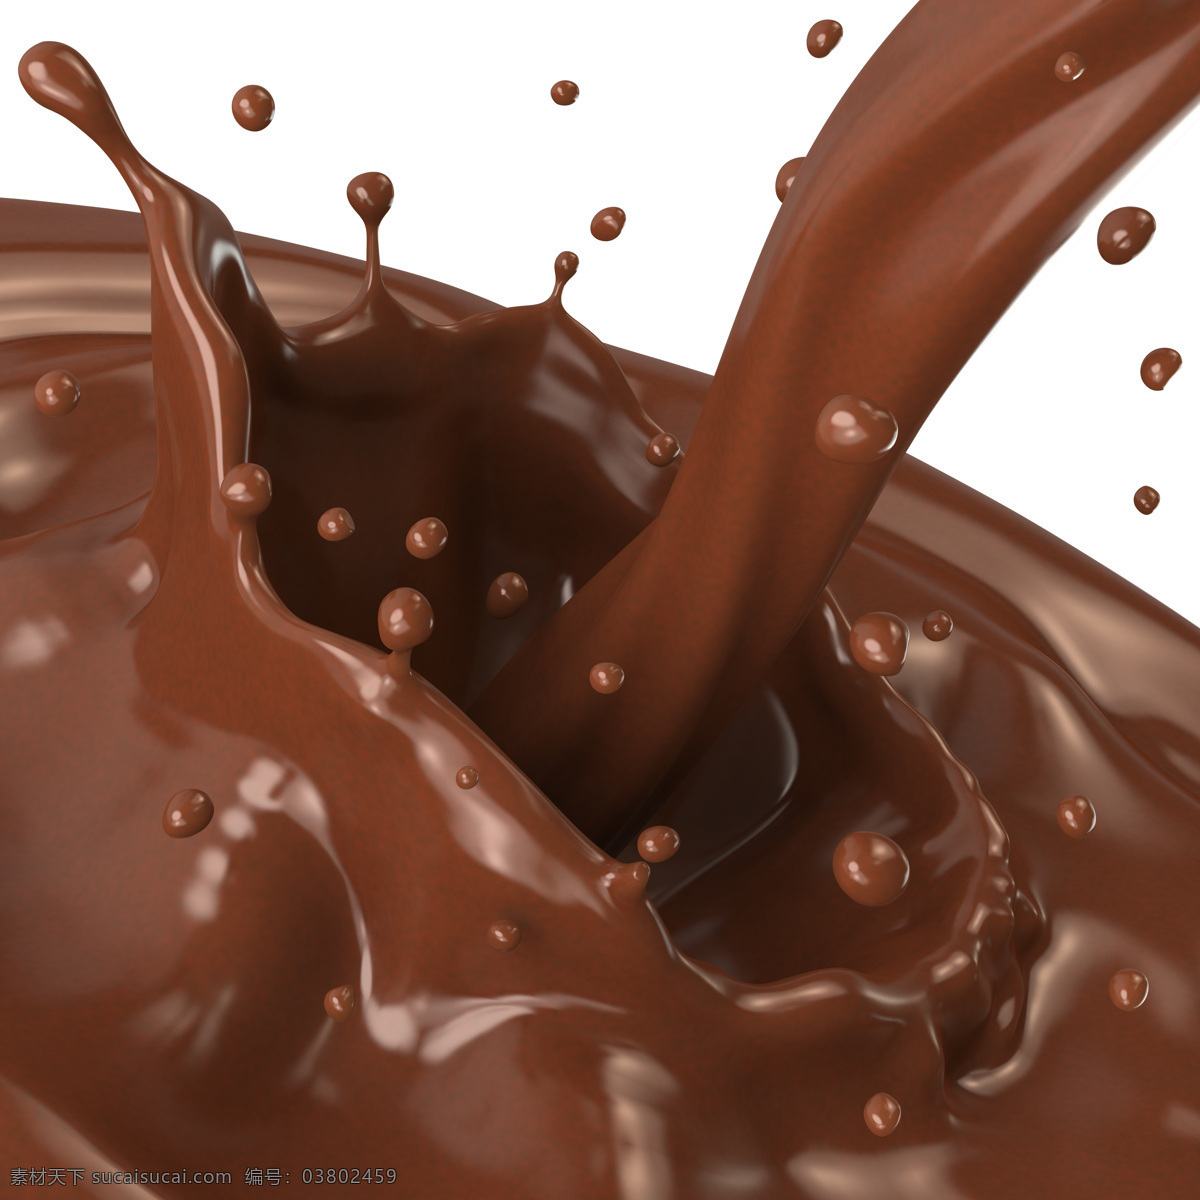 巧克力 喷溅 飞溅的巧克力 动感巧克力 溅起的巧克力 美食 美味 点心图片 餐饮美食